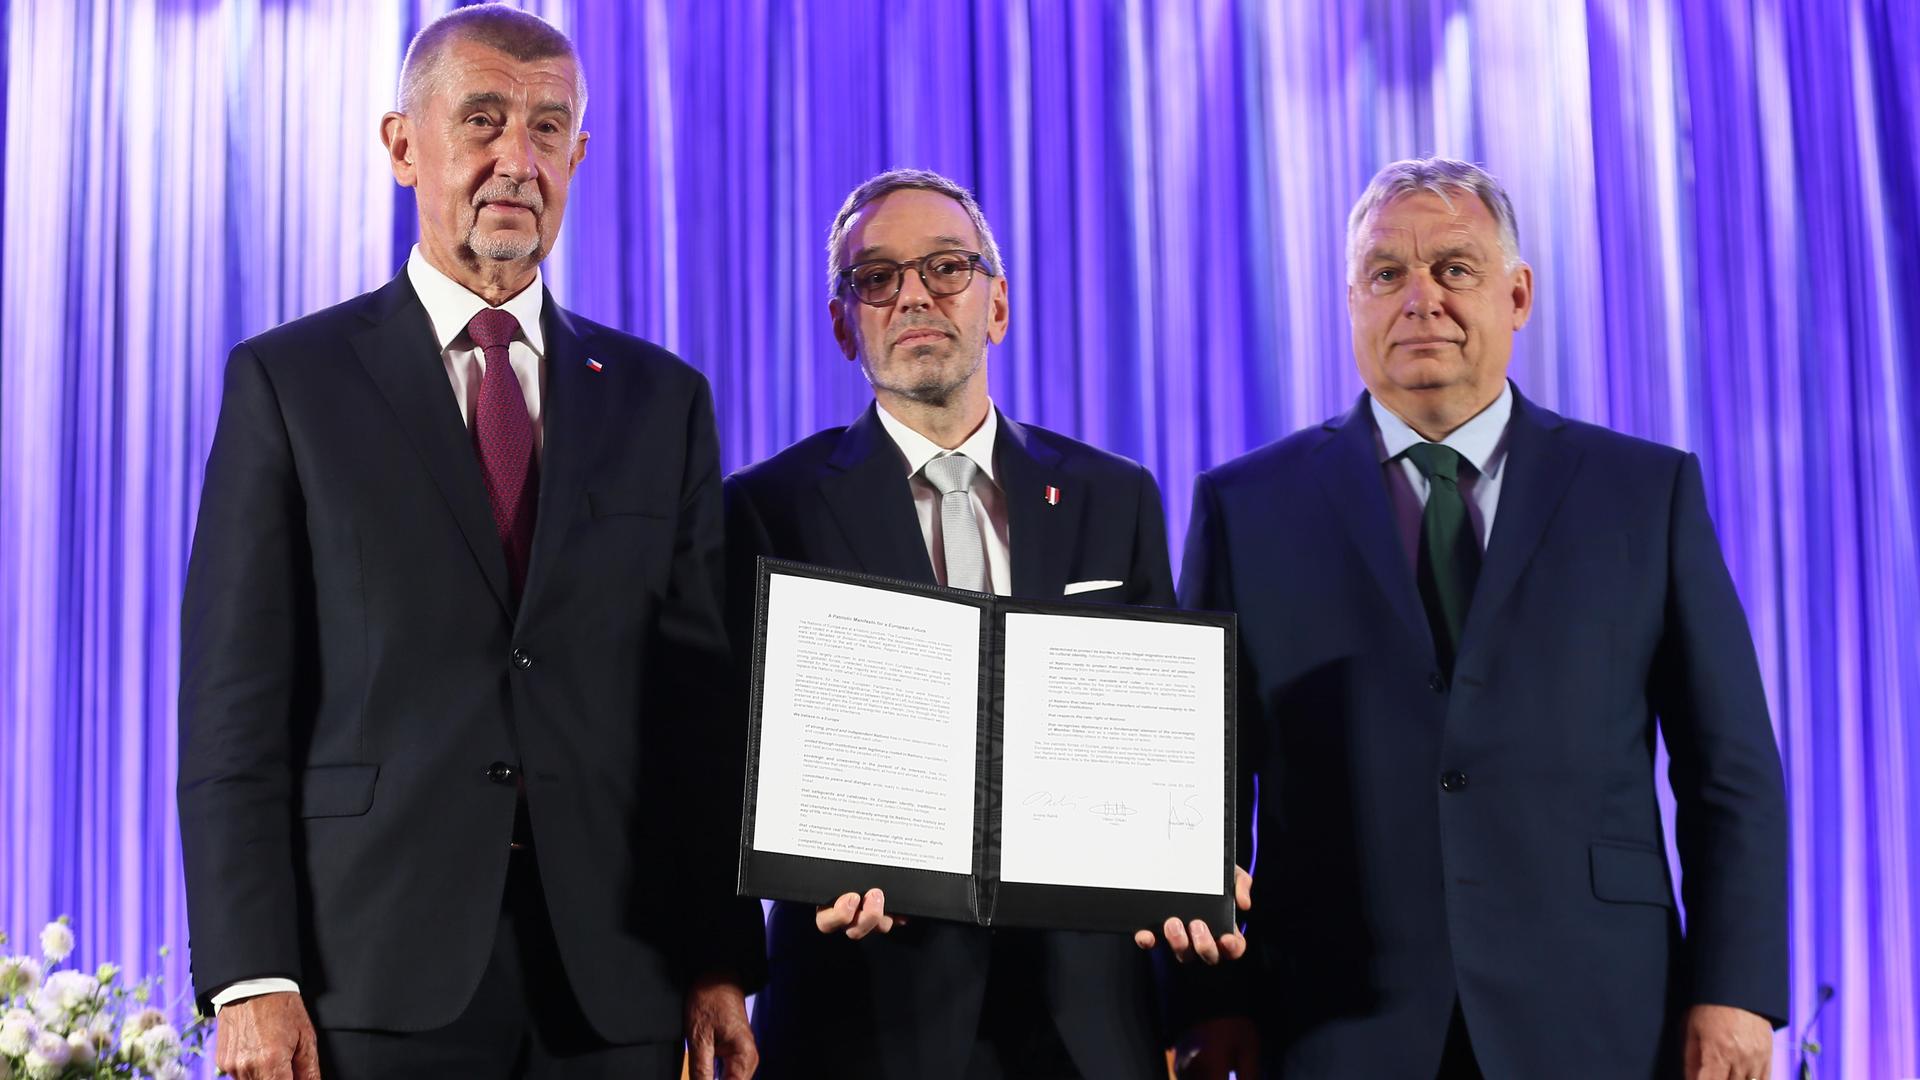 Andrej Babis, Herbert Kickl und Viktor Orbán stehen auf einer Bühne und präsentieren einen unterschriebenen Vertrag.